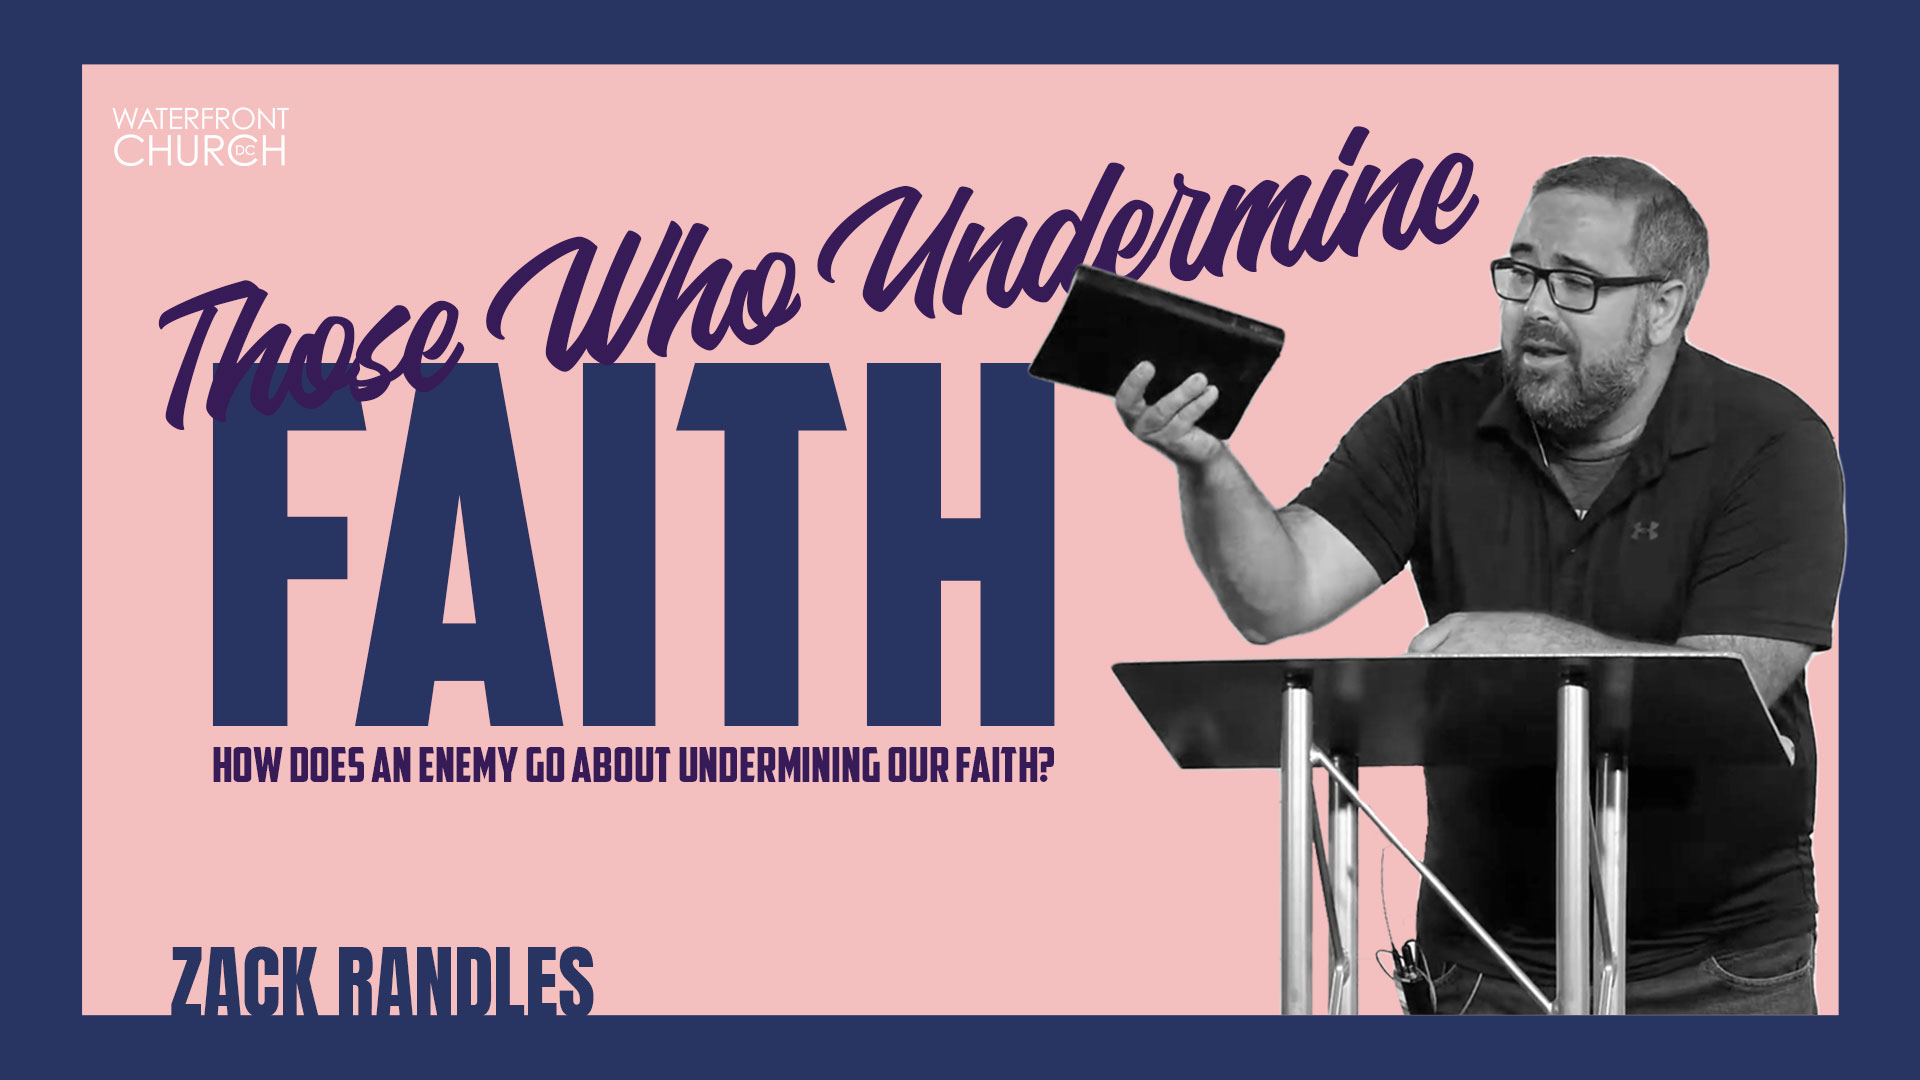 Those Who Undermine Faith